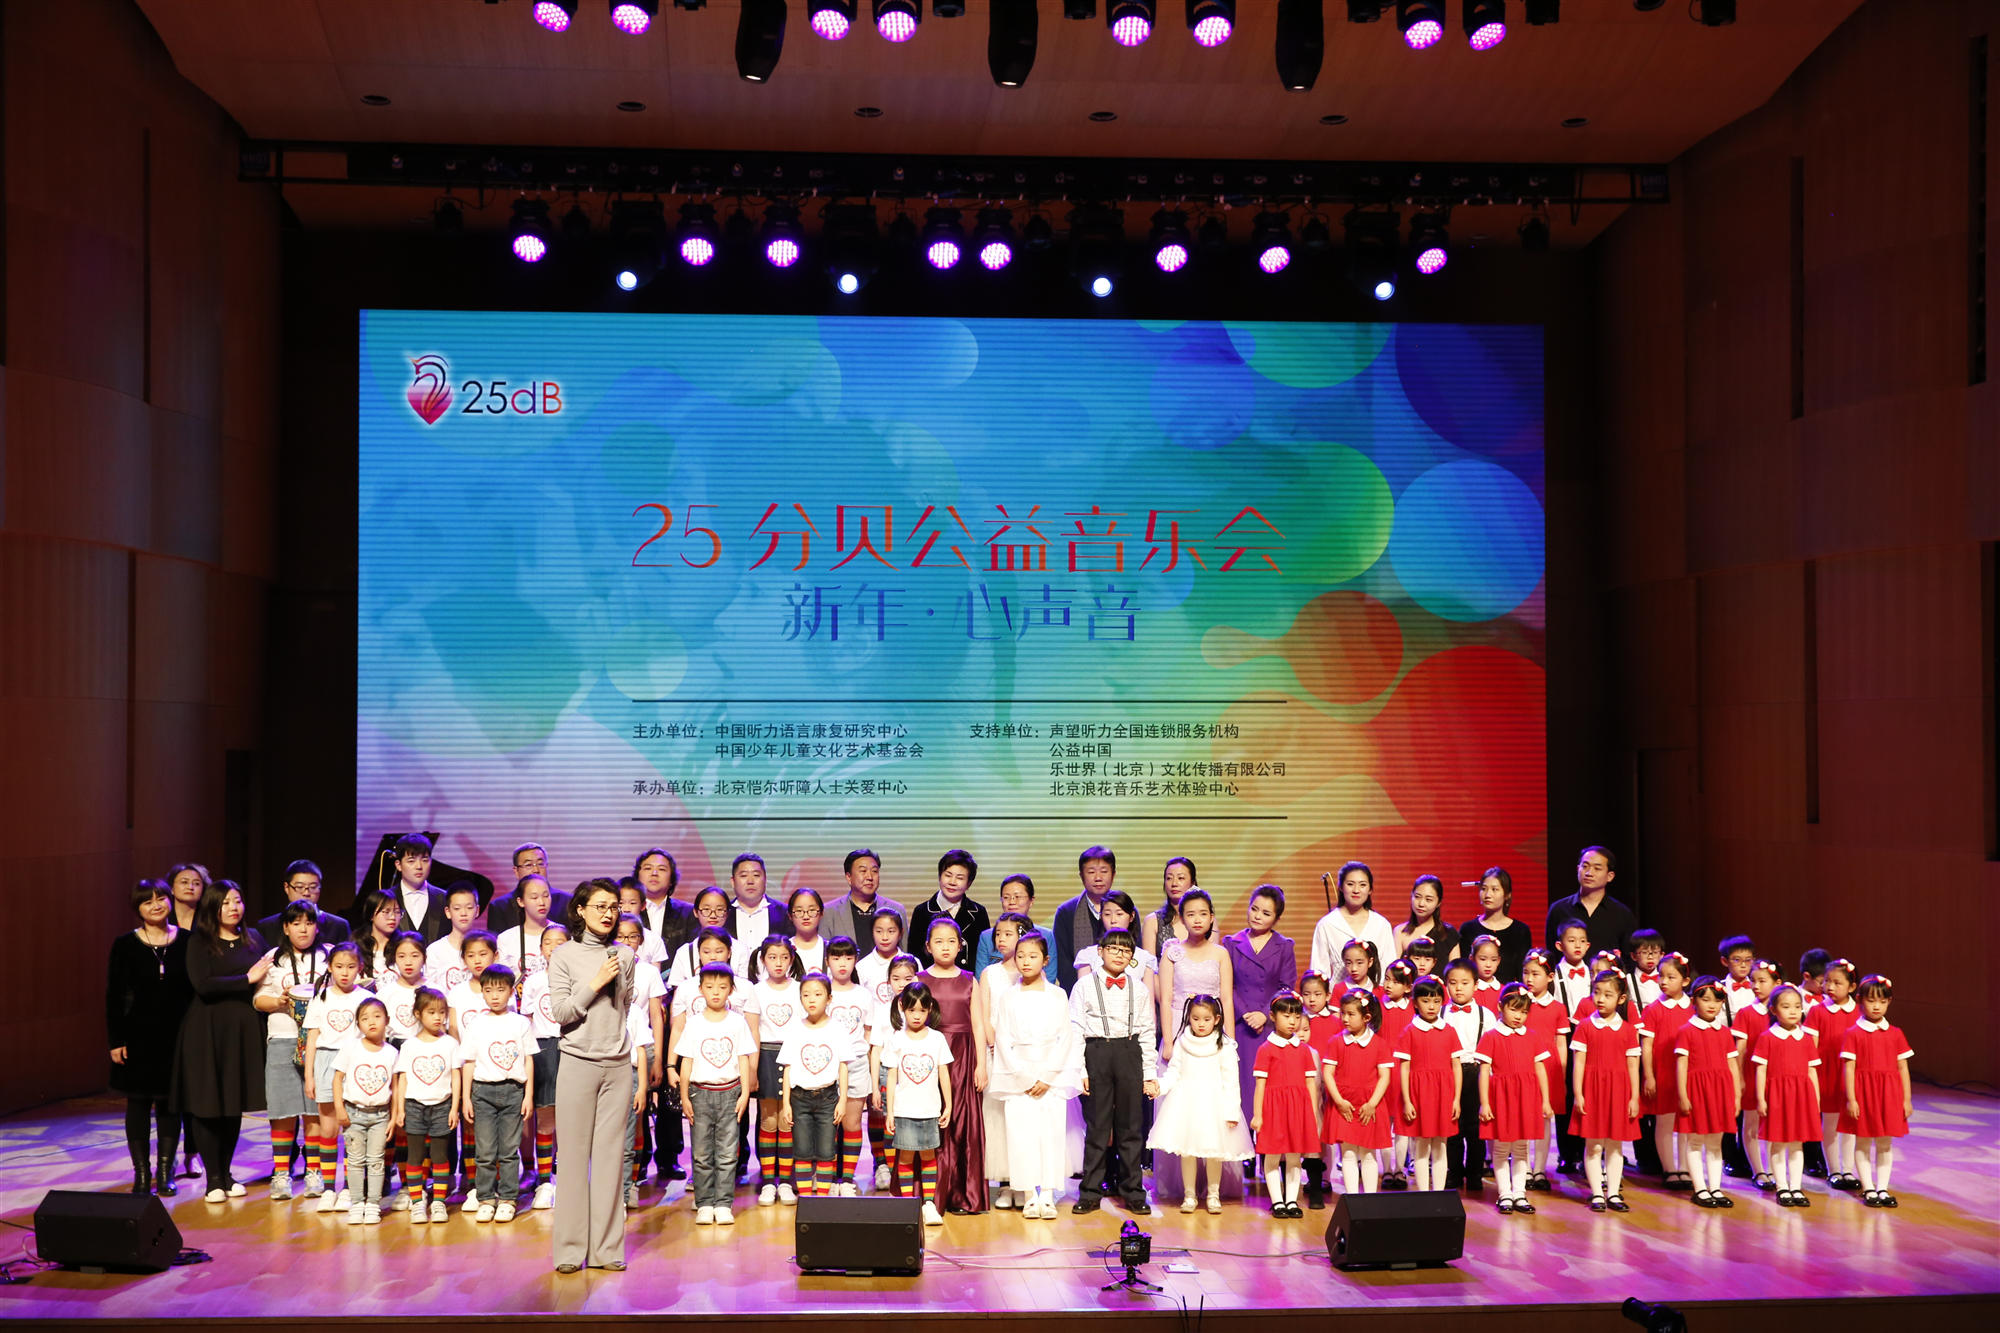 『新闻直播间』北京听力障碍儿童 用歌声表达美好心愿